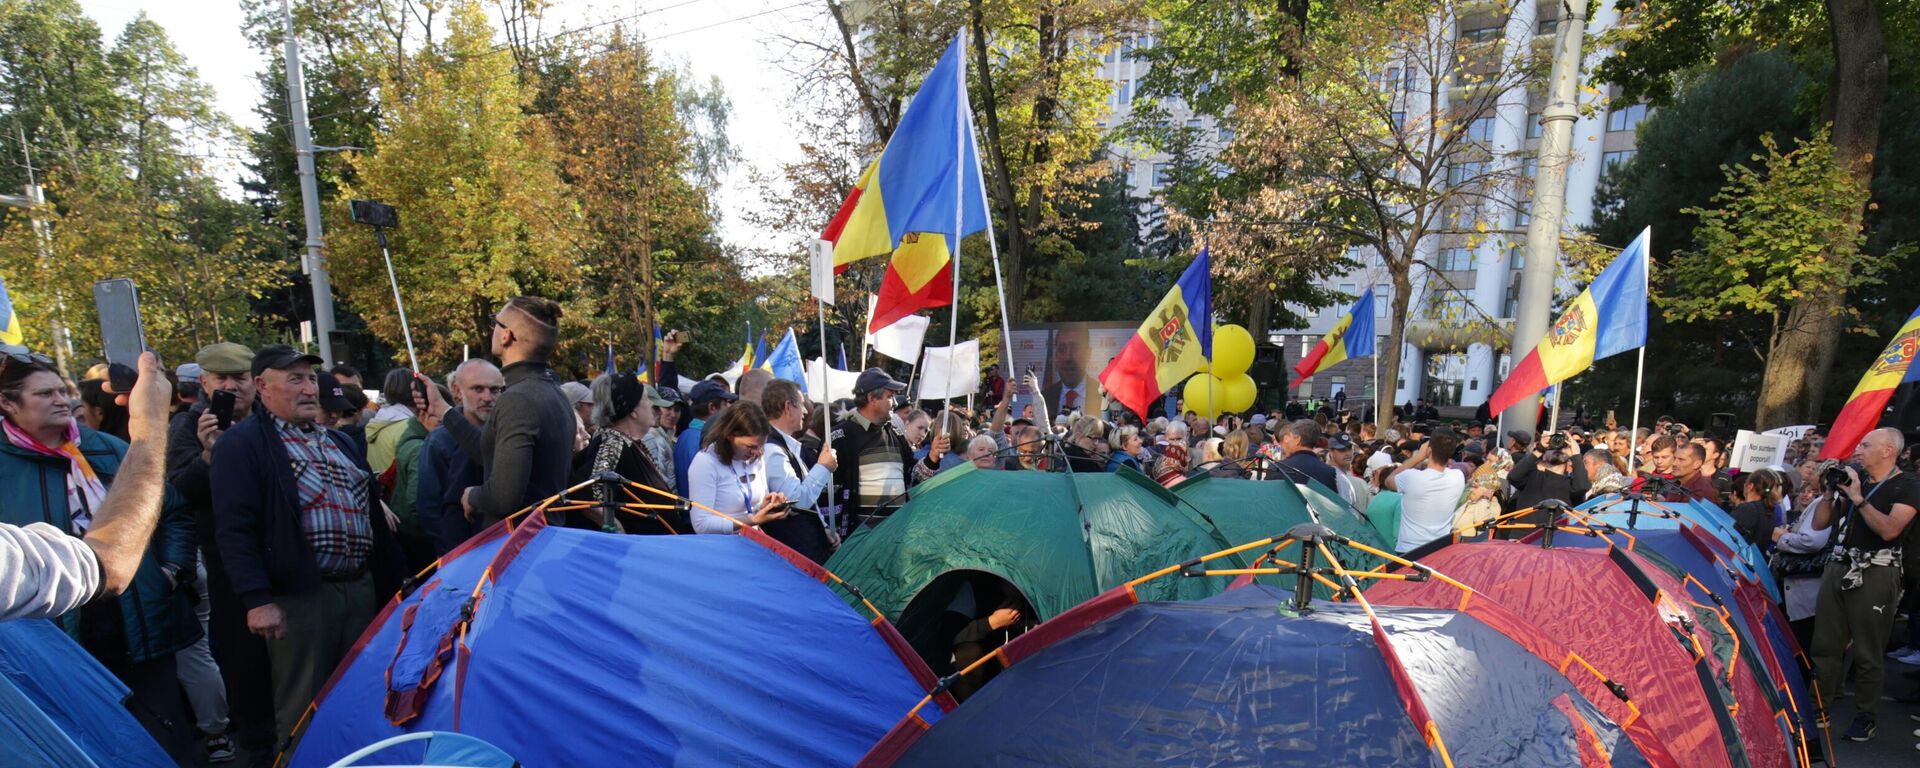 Demonstranti i šatori na protestu opozicije u Kišinjevu - Sputnik Srbija, 1920, 09.10.2022